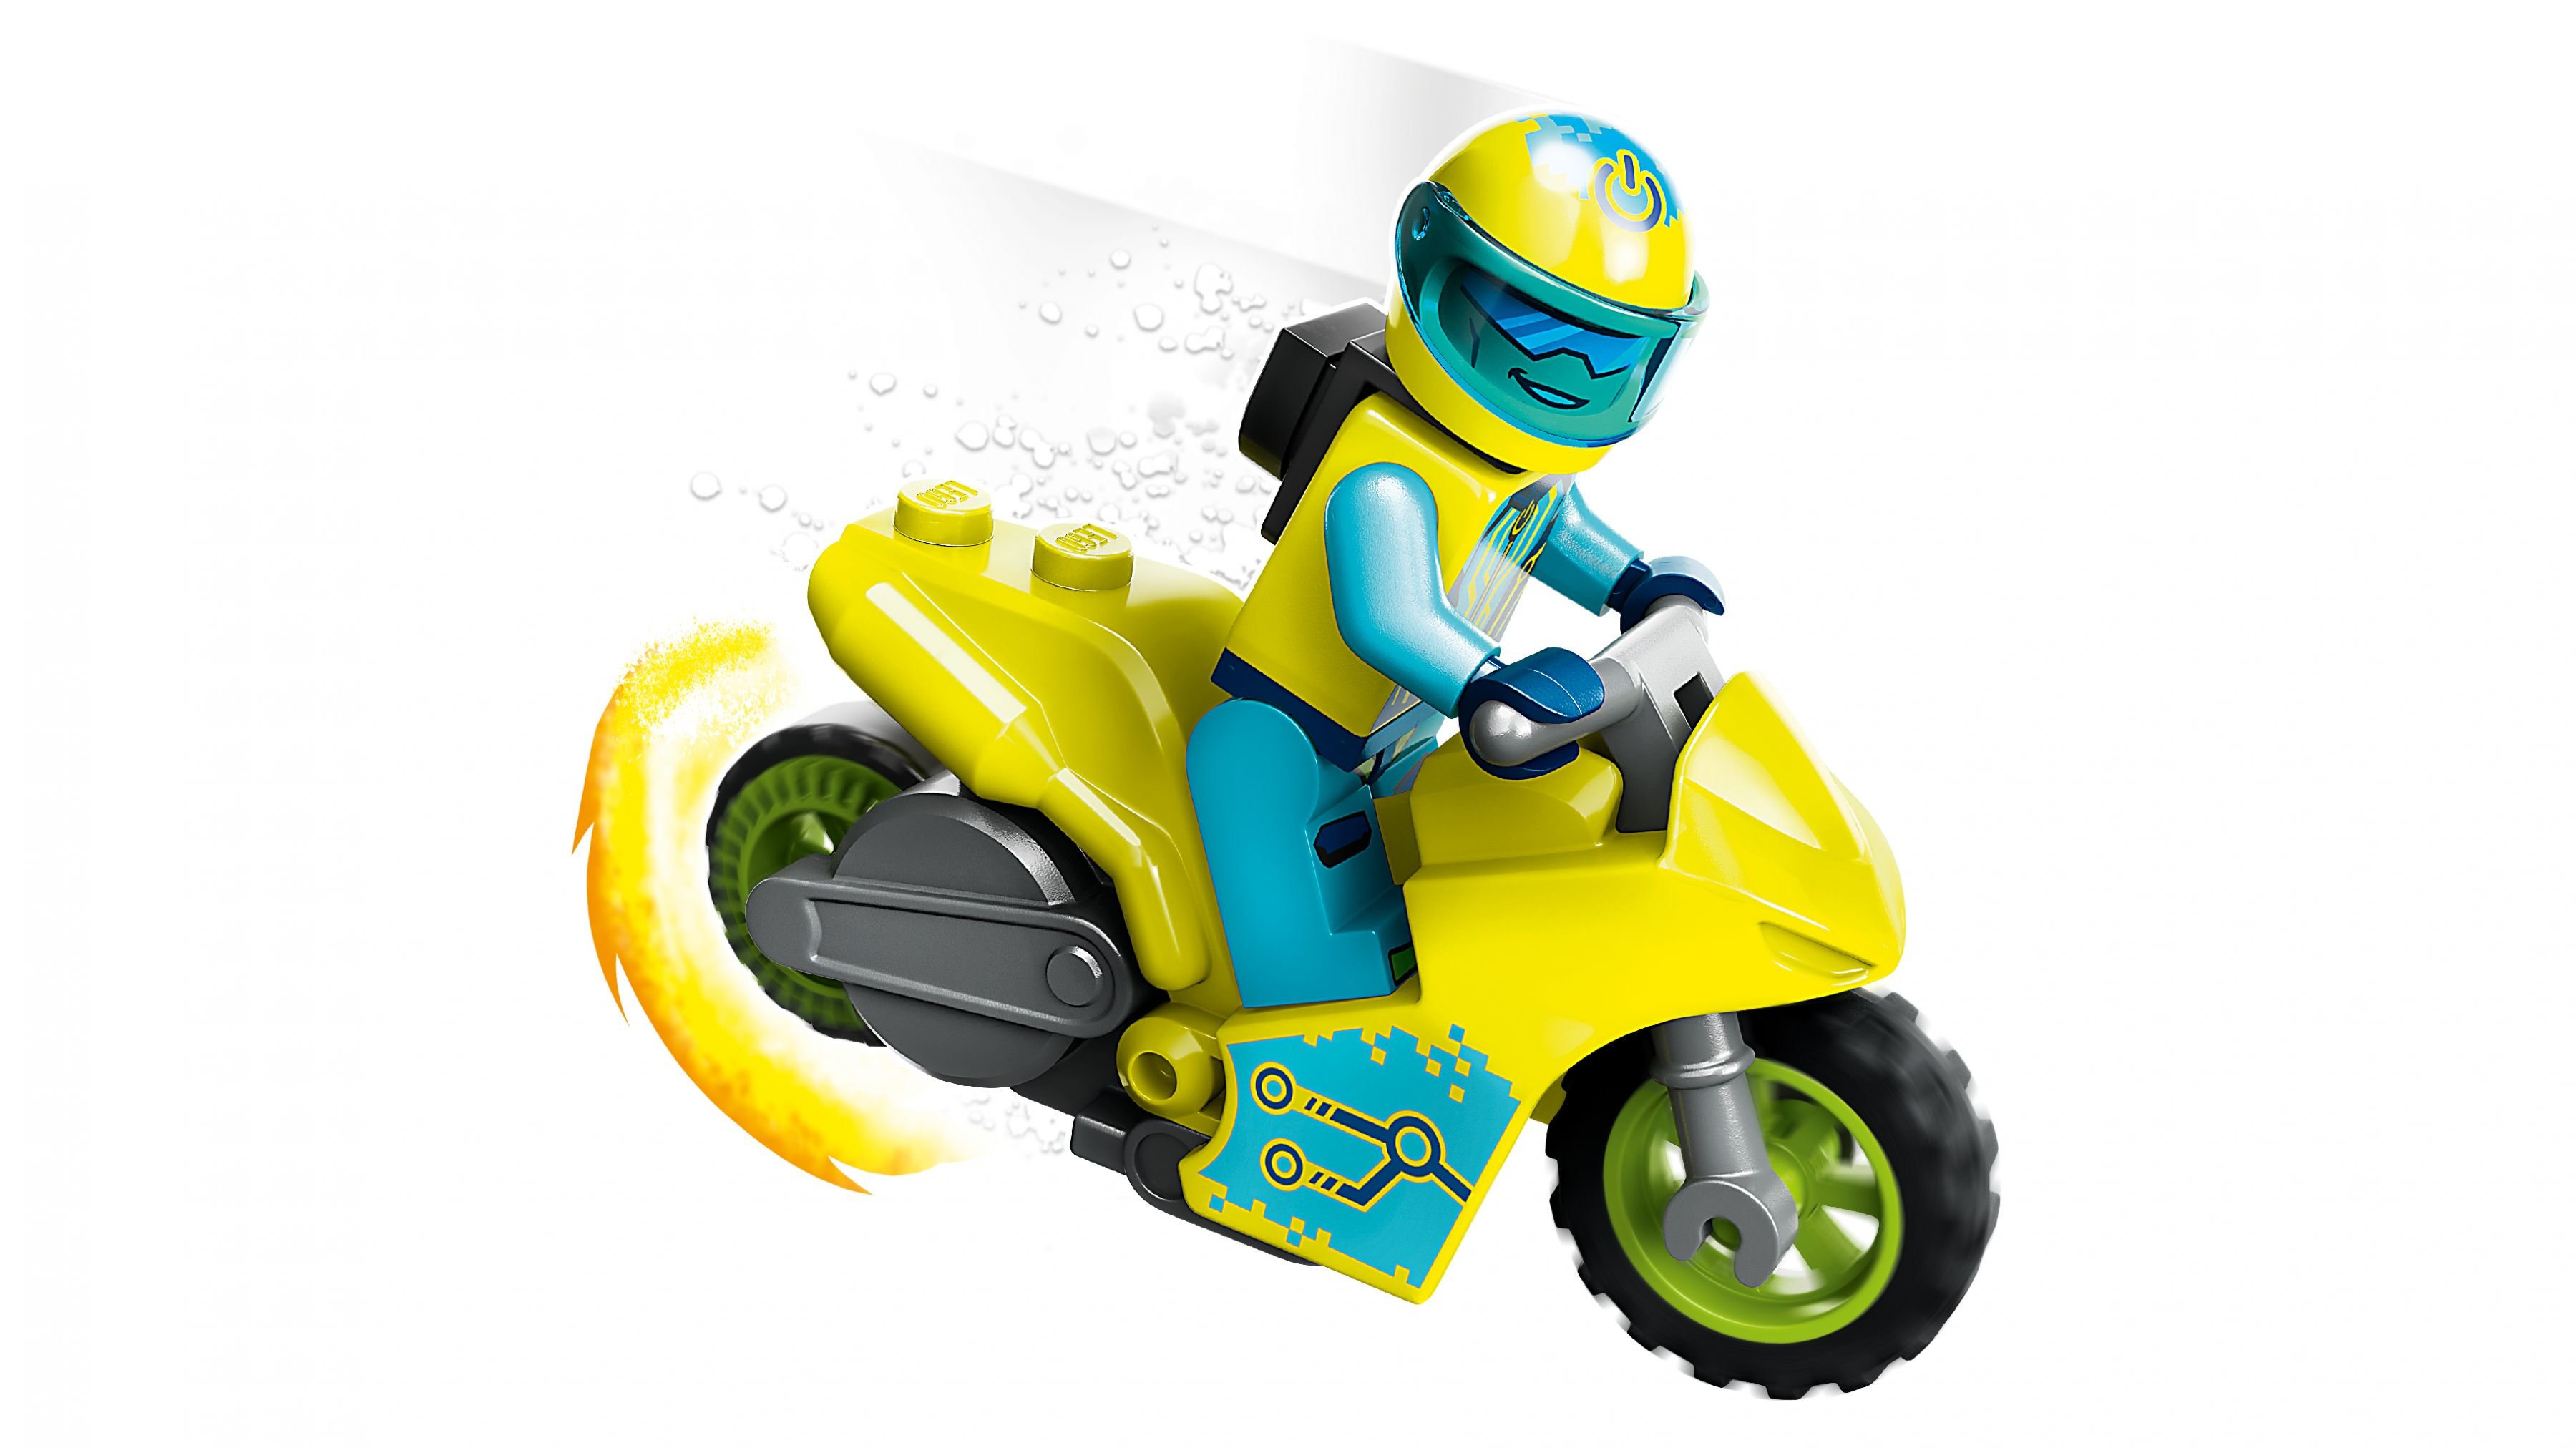 LEGO City 60358 Cyber-Stuntbike LEGO_60358_WEB_SEC03_NOBG.jpg